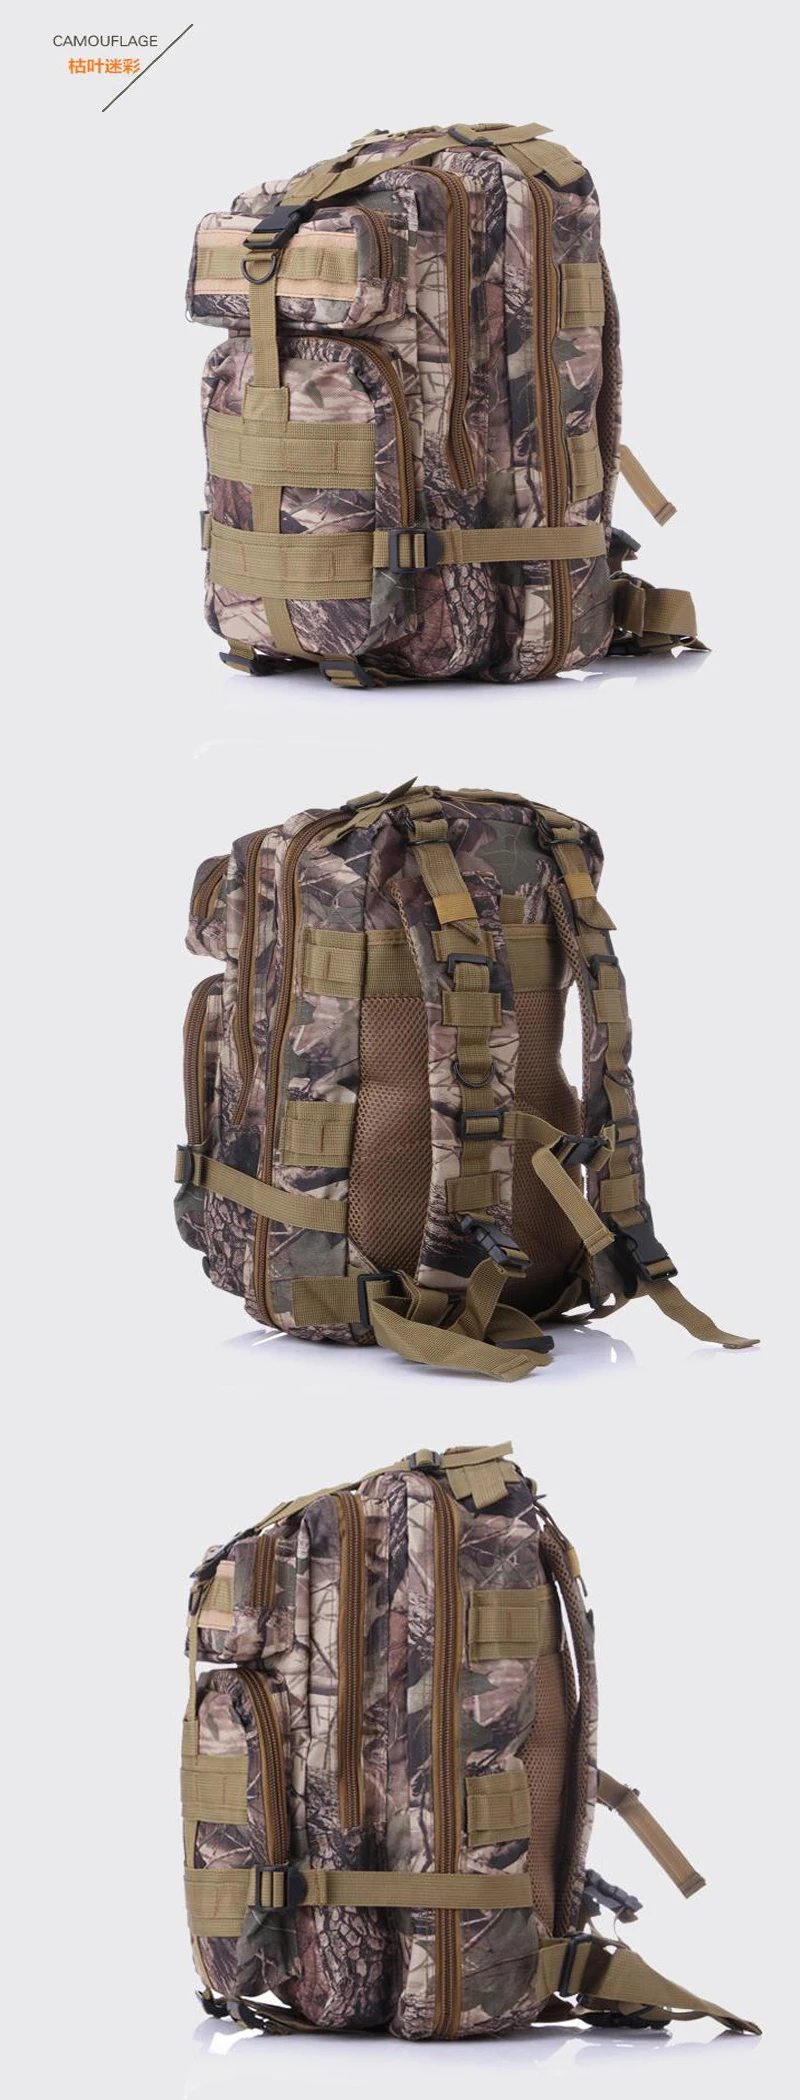 3P уличная спортивная сумка, армейский военный рюкзак, тактический рюкзак, сумки для кемпинга, походов, походов, путешествий, рюкзаки